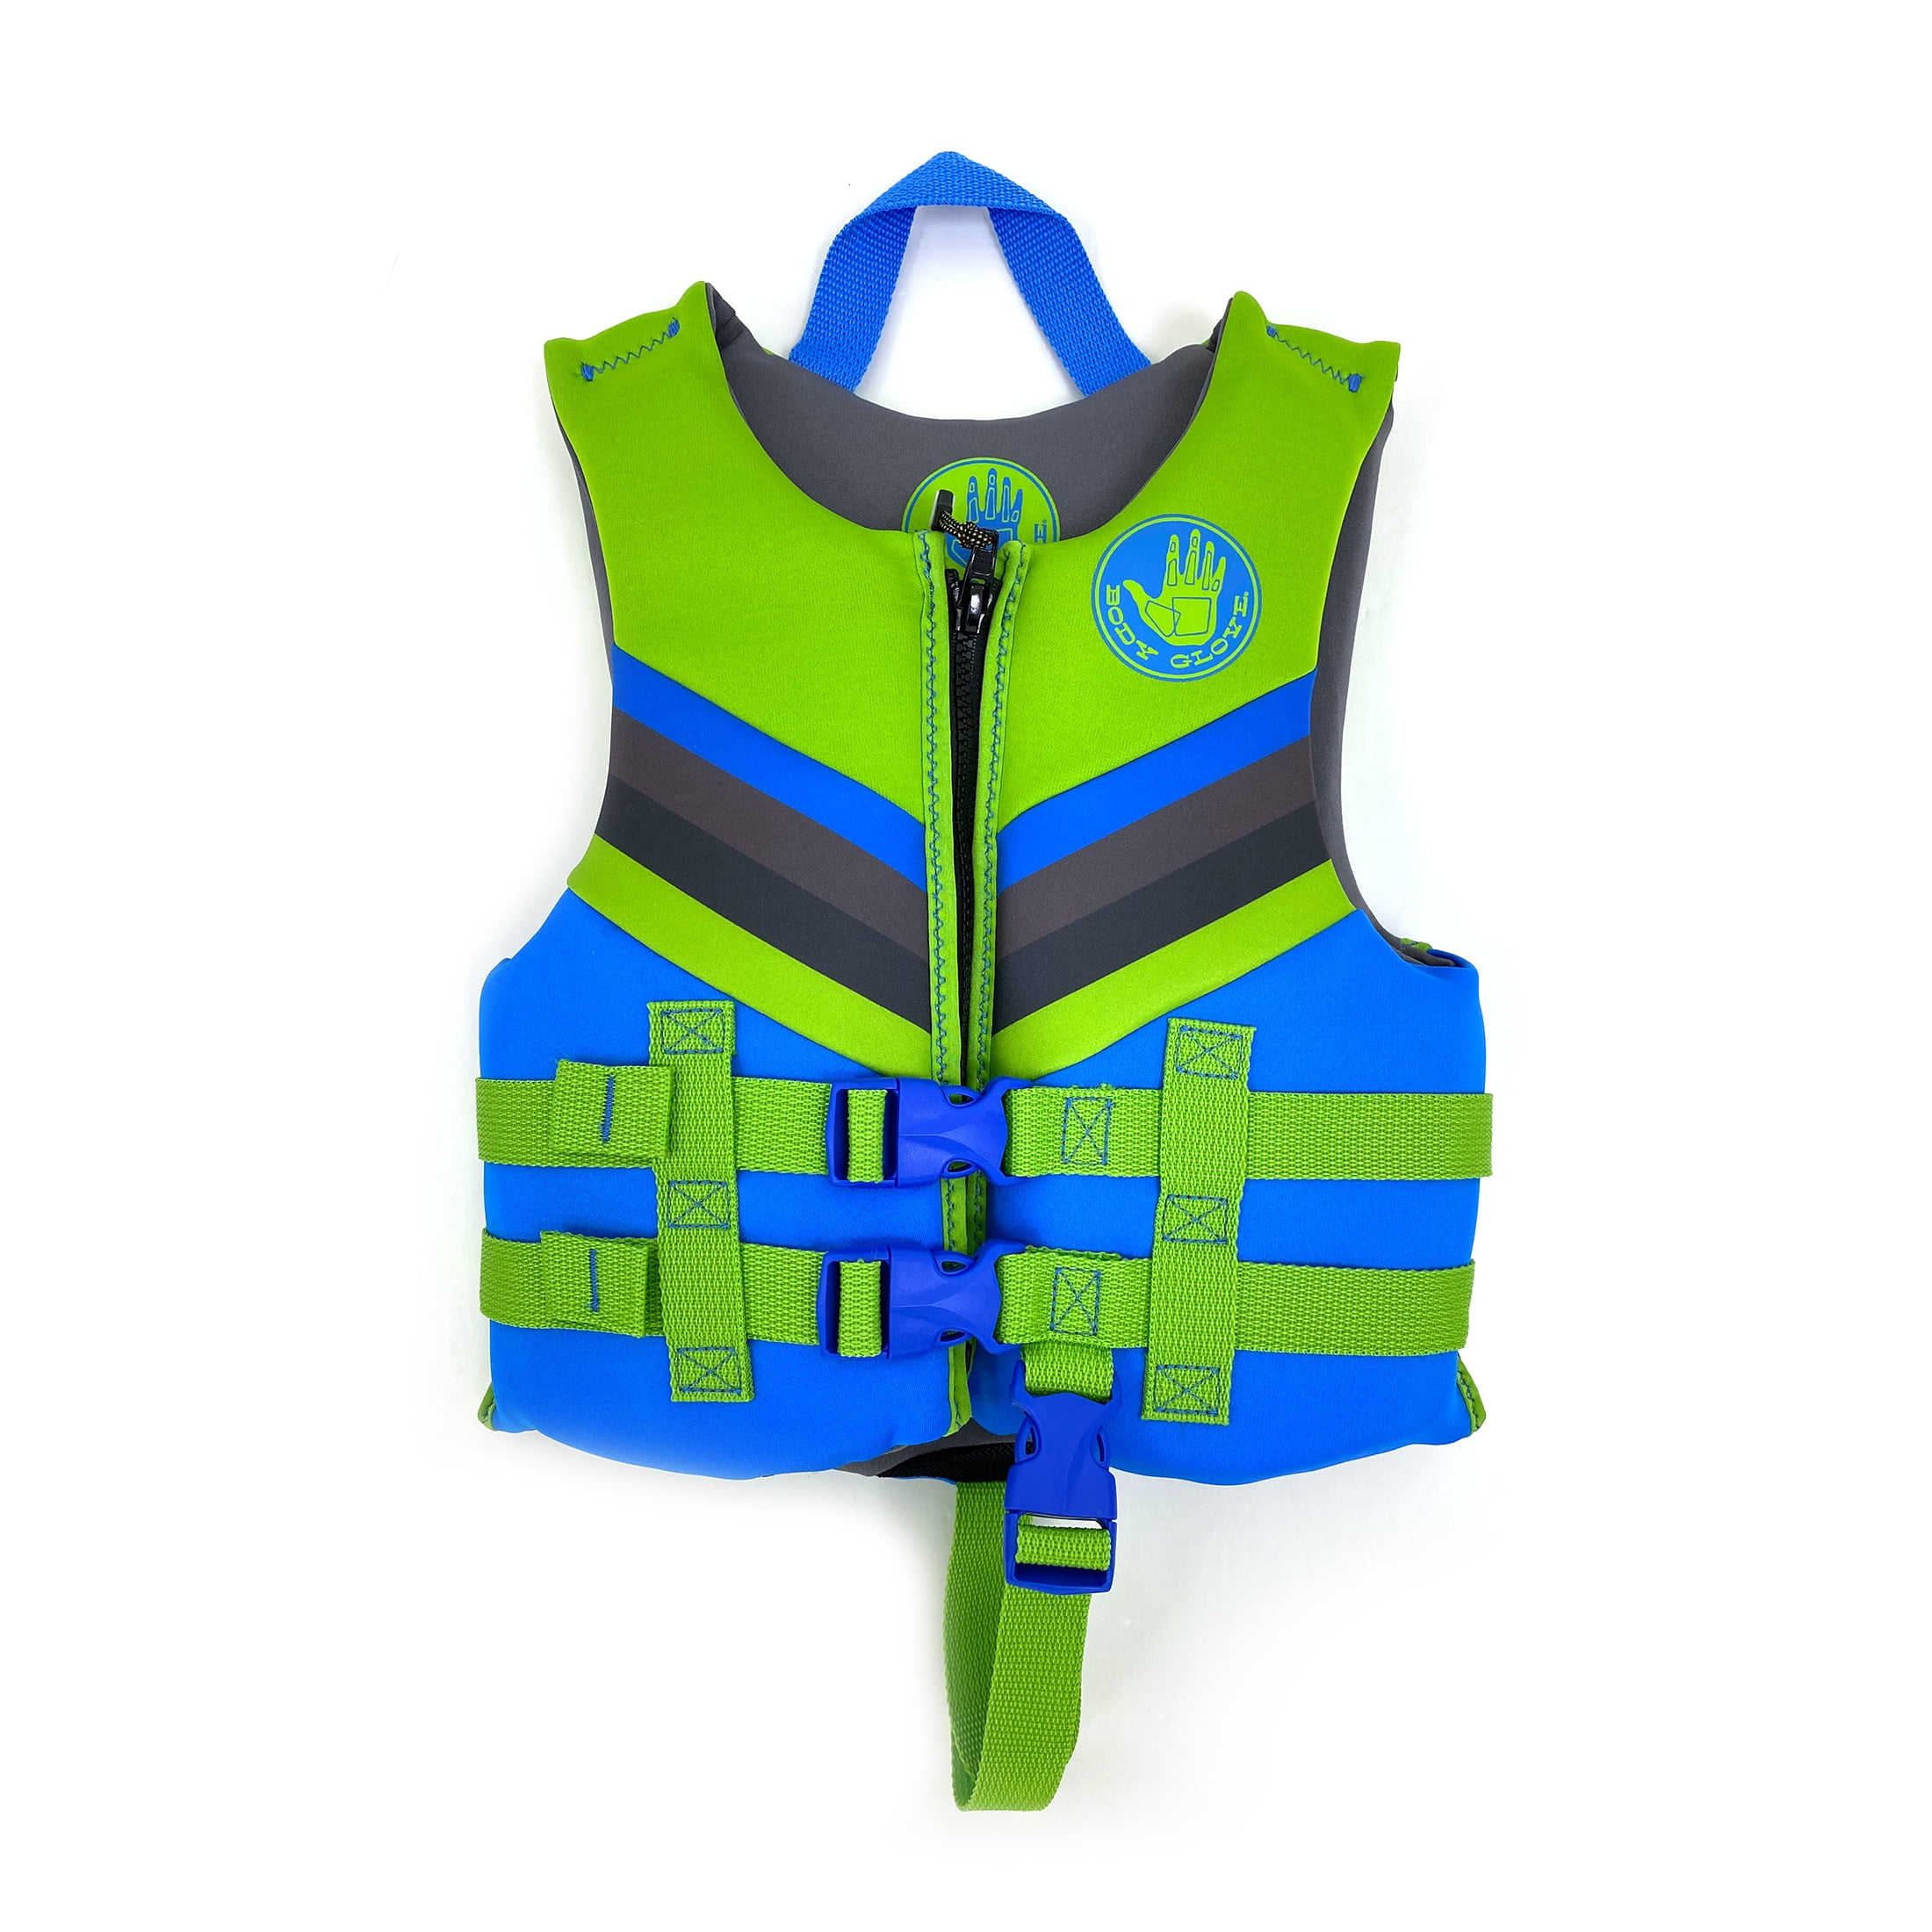 LIFE JACKETS CHILD KIDS SWIMMING Floating Swim Zip Vest Buoyancy Aid Jacket UK 